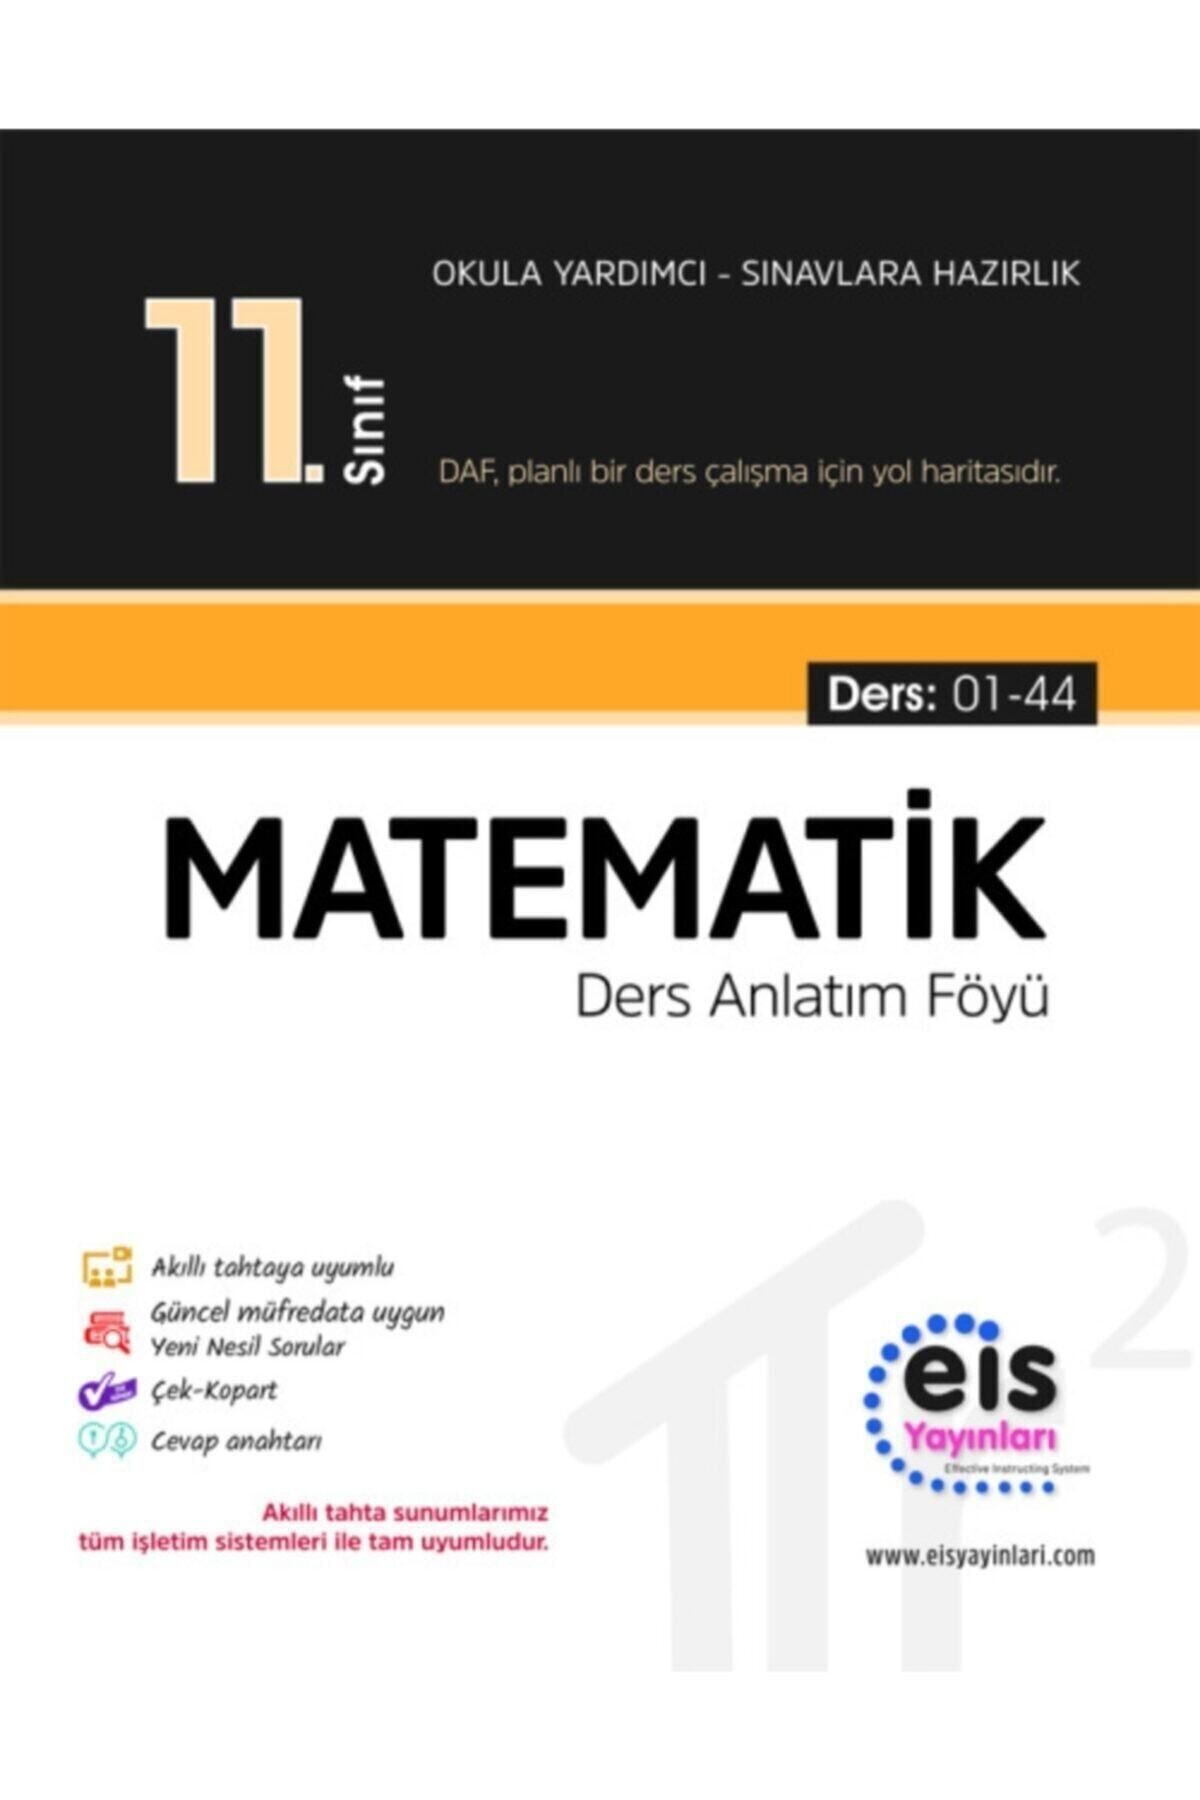 Eis Yayınları Eis 11 Sınıf Matematik Ders Anlatım Föyü 2021